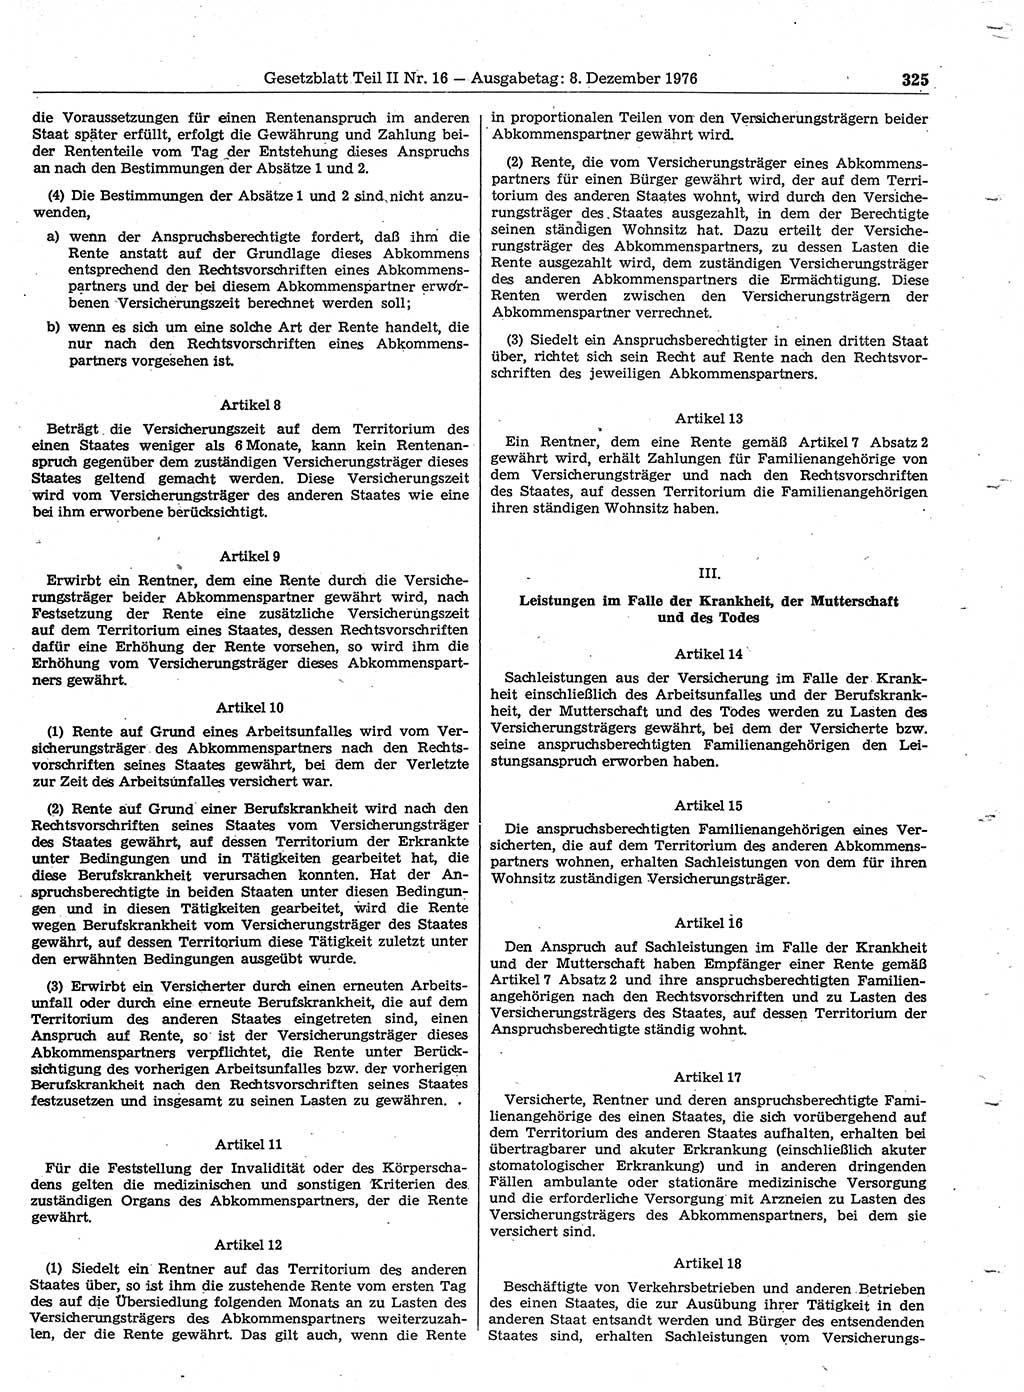 Gesetzblatt (GBl.) der Deutschen Demokratischen Republik (DDR) Teil ⅠⅠ 1976, Seite 325 (GBl. DDR ⅠⅠ 1976, S. 325)